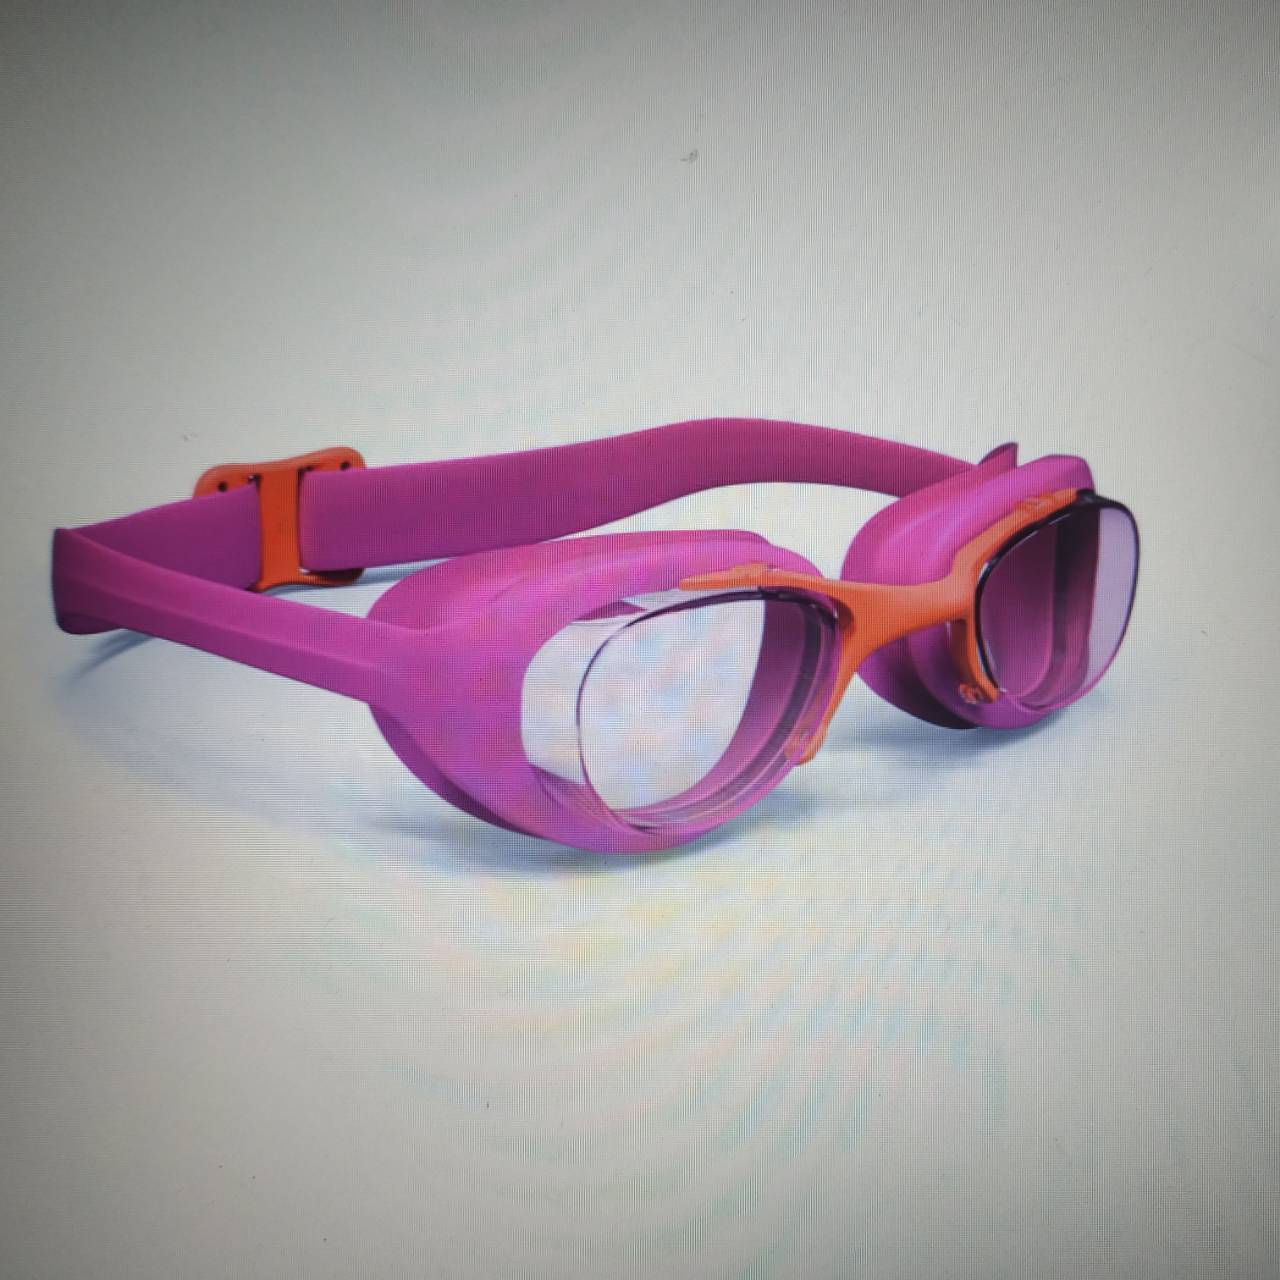 แว่นตาว่ายน้ำเด็ก แว่นตาว่ายน้ำ คุณภาพสูง ยี่ห้อ NABAIJI รุ่น XBASE JUNIOR สีชมพู แว่น เด็ก กันน้ำเข้าดวงตาได้ดี